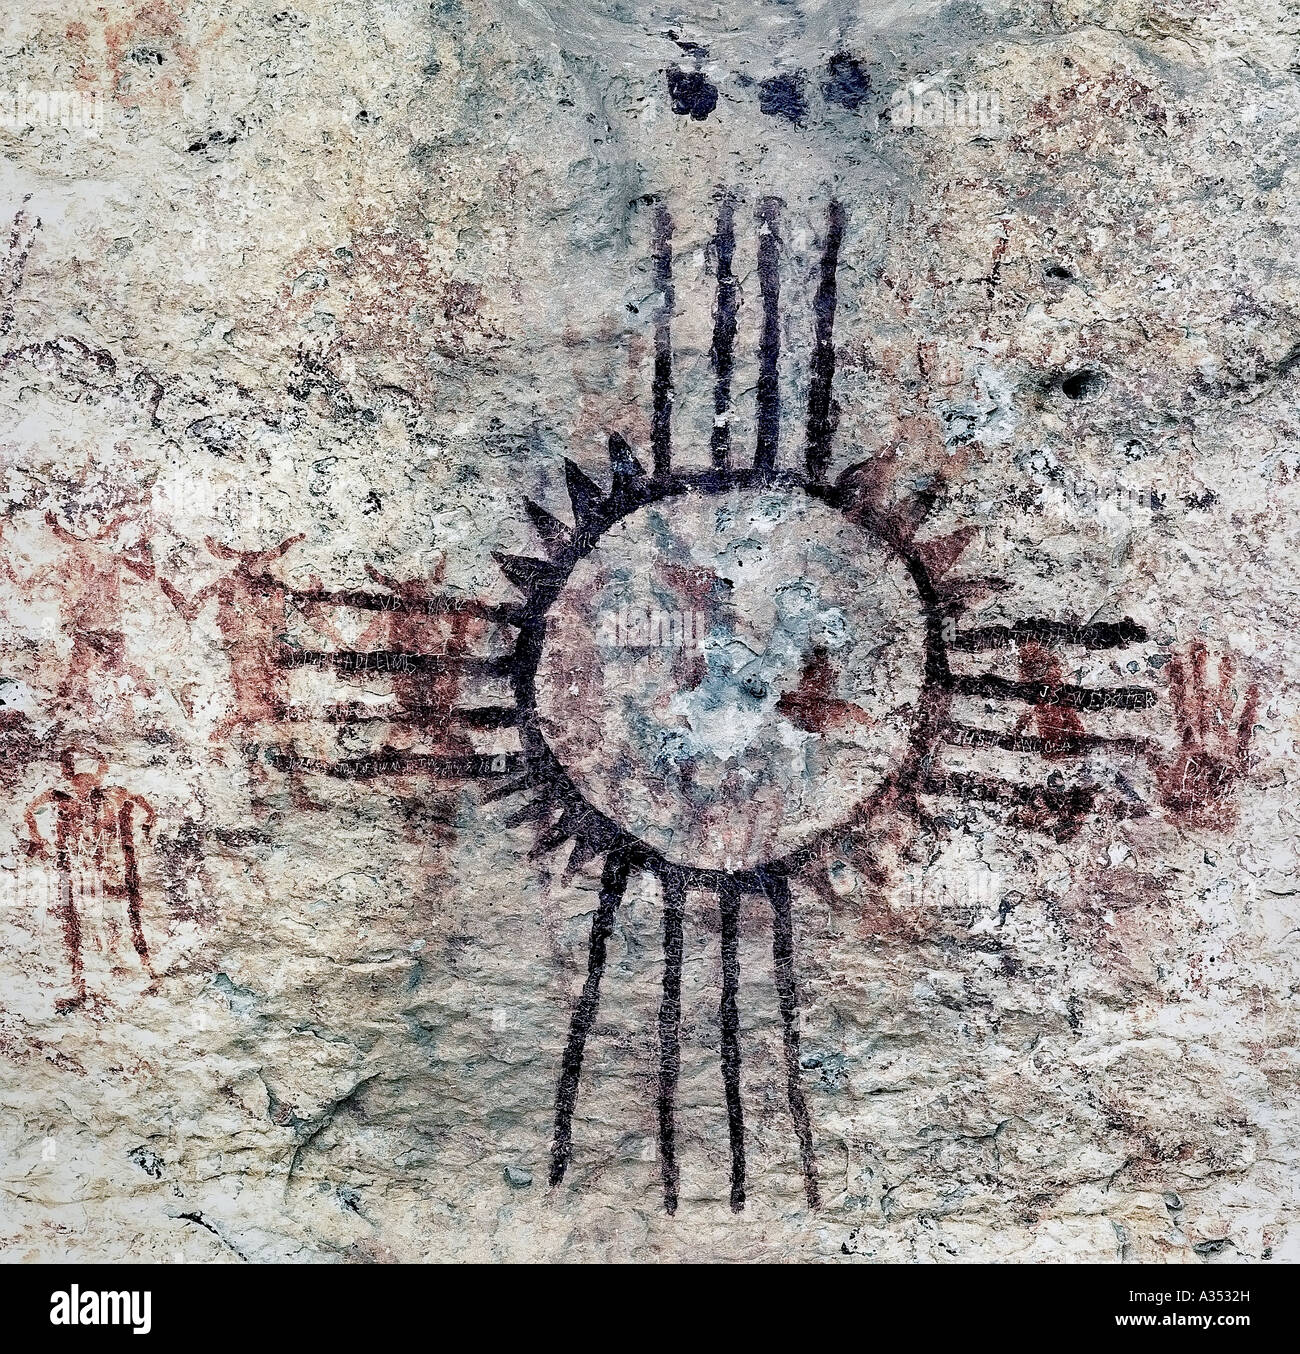 Native American peintures sur une falaise à Dryden Texas situé dans la pointe nord du désert de Chihuahuan Banque D'Images